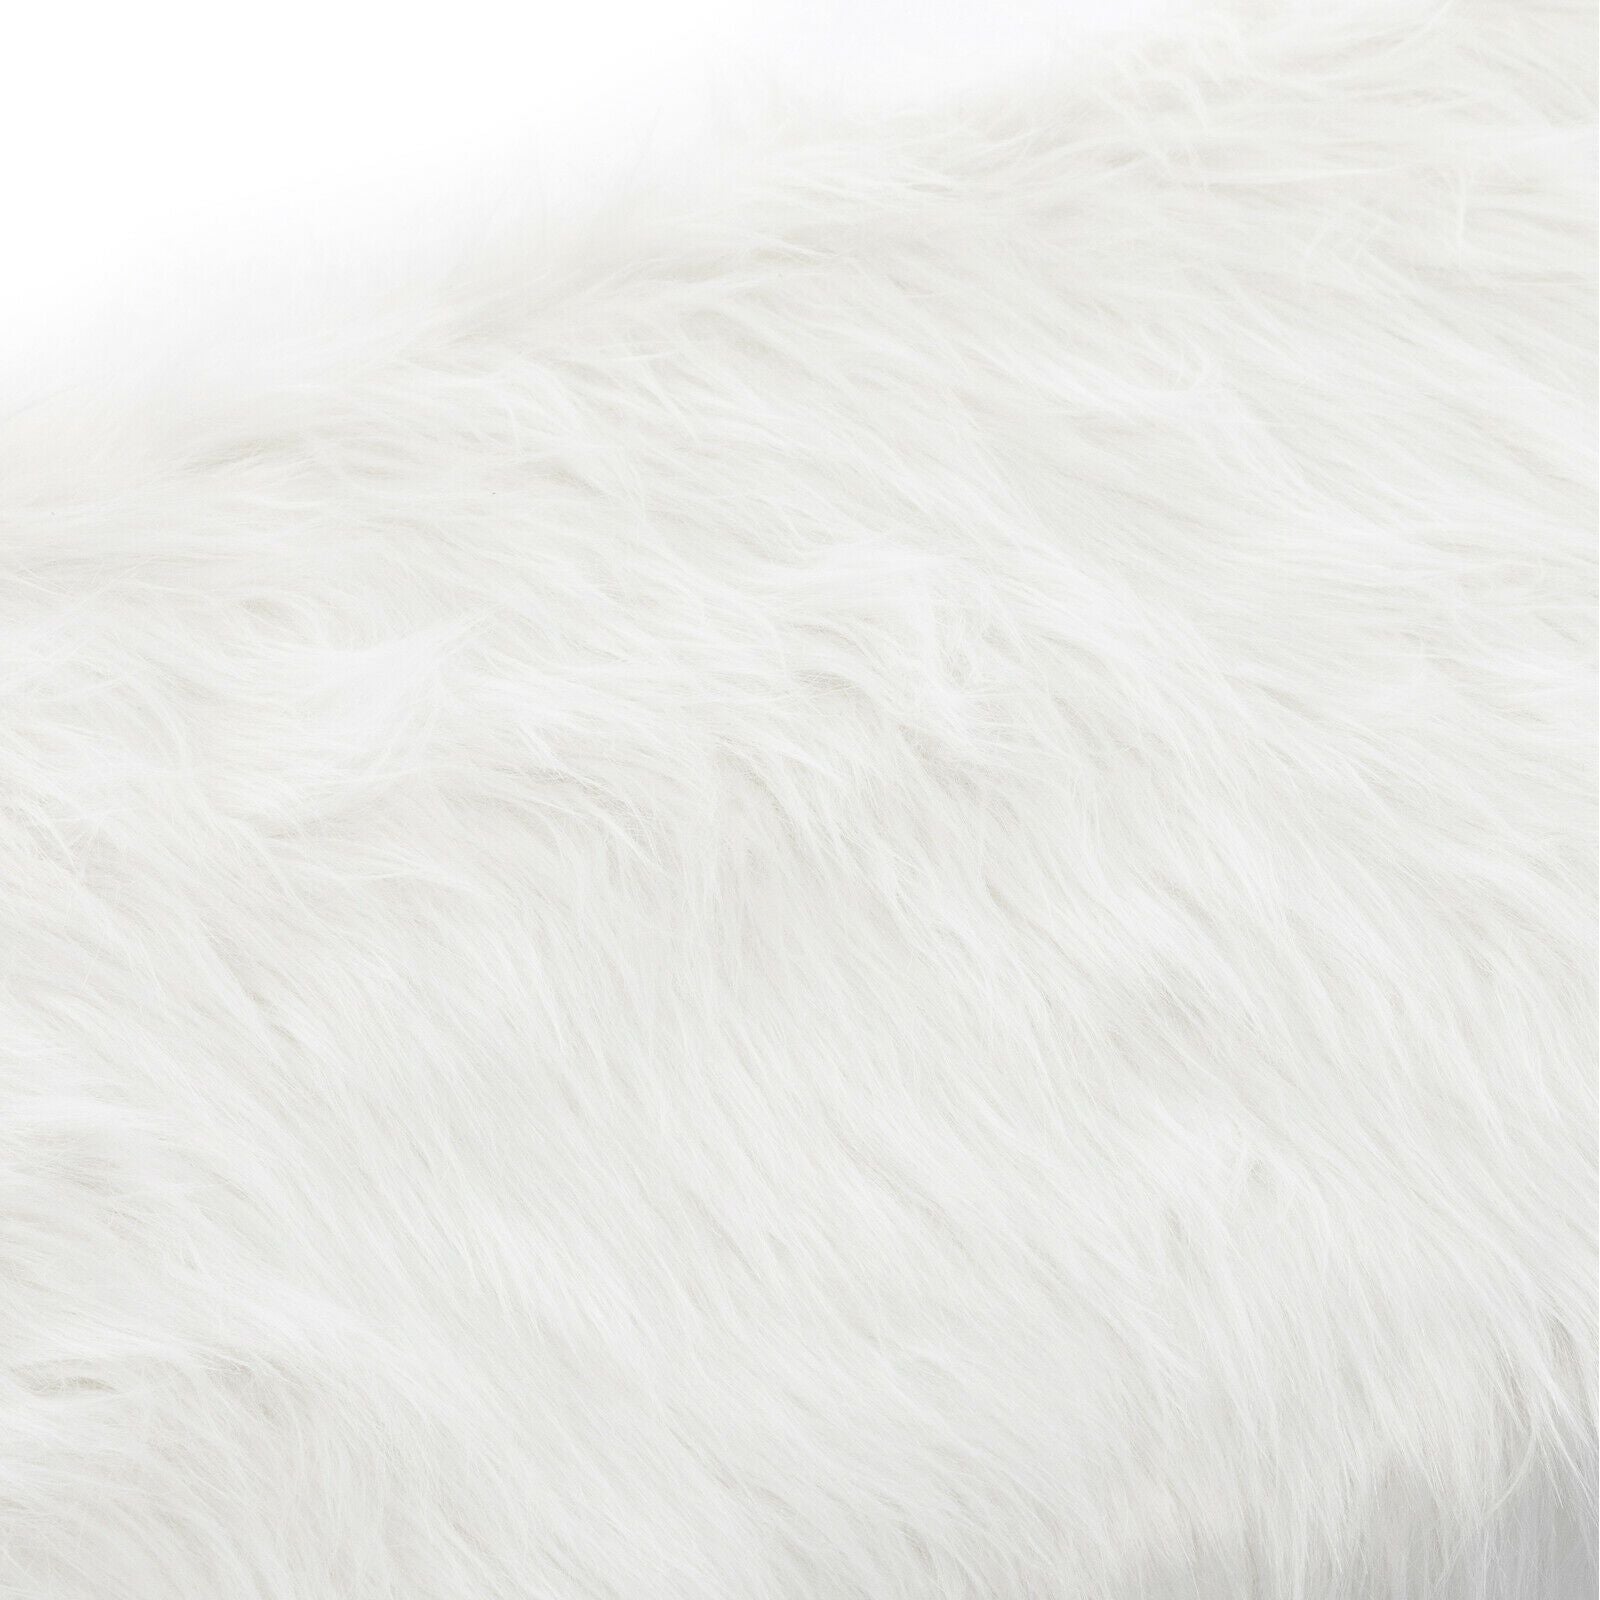 Luxurious Rolling Faux Fur Fuzzy Desk Chair - Westfield Retailers